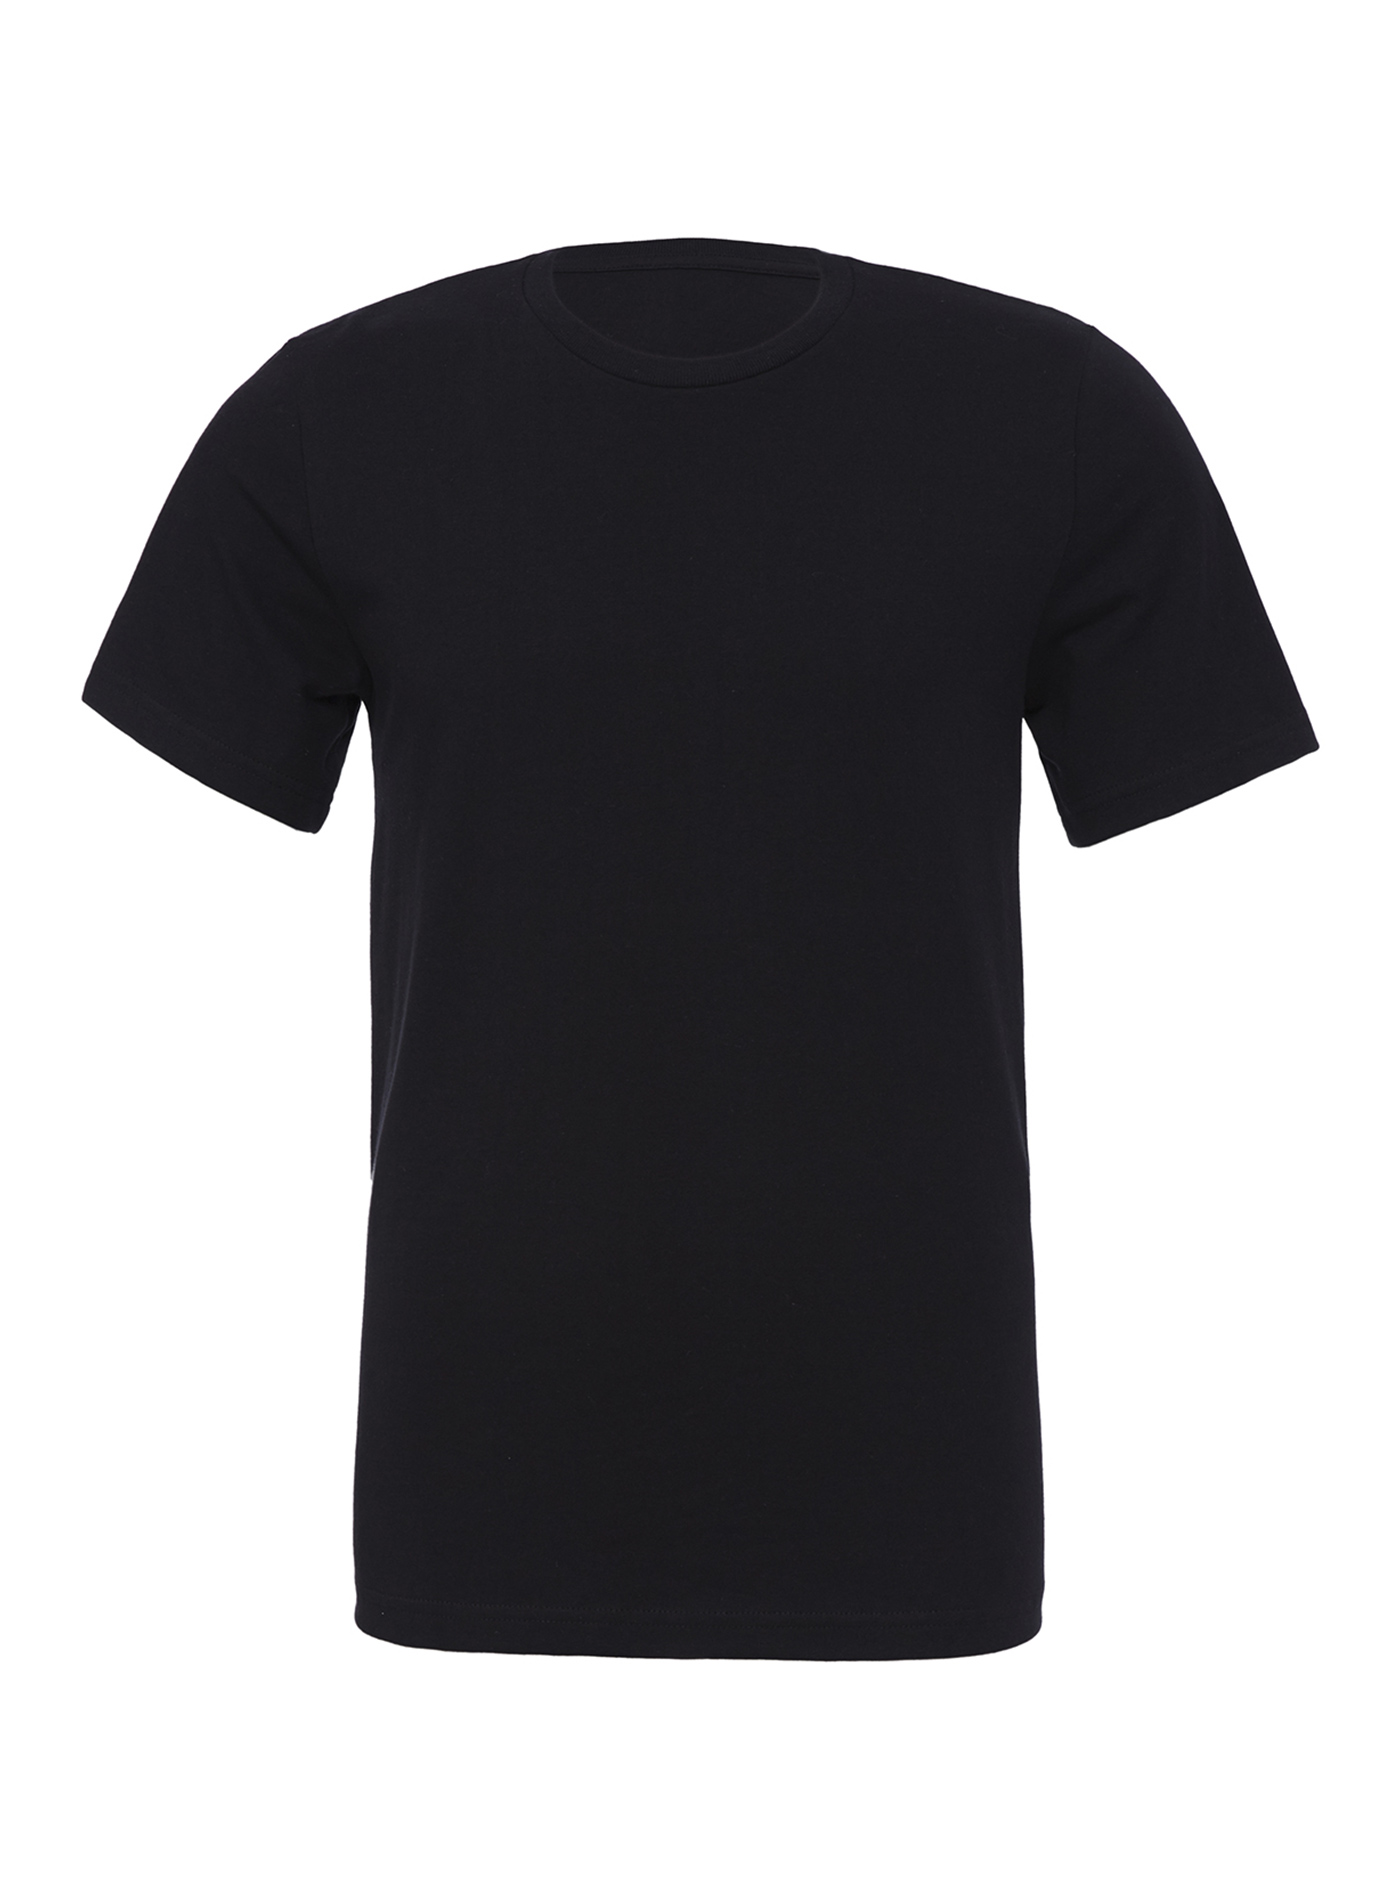 Unisex tričko Bella + Canvas Jersey - černá L